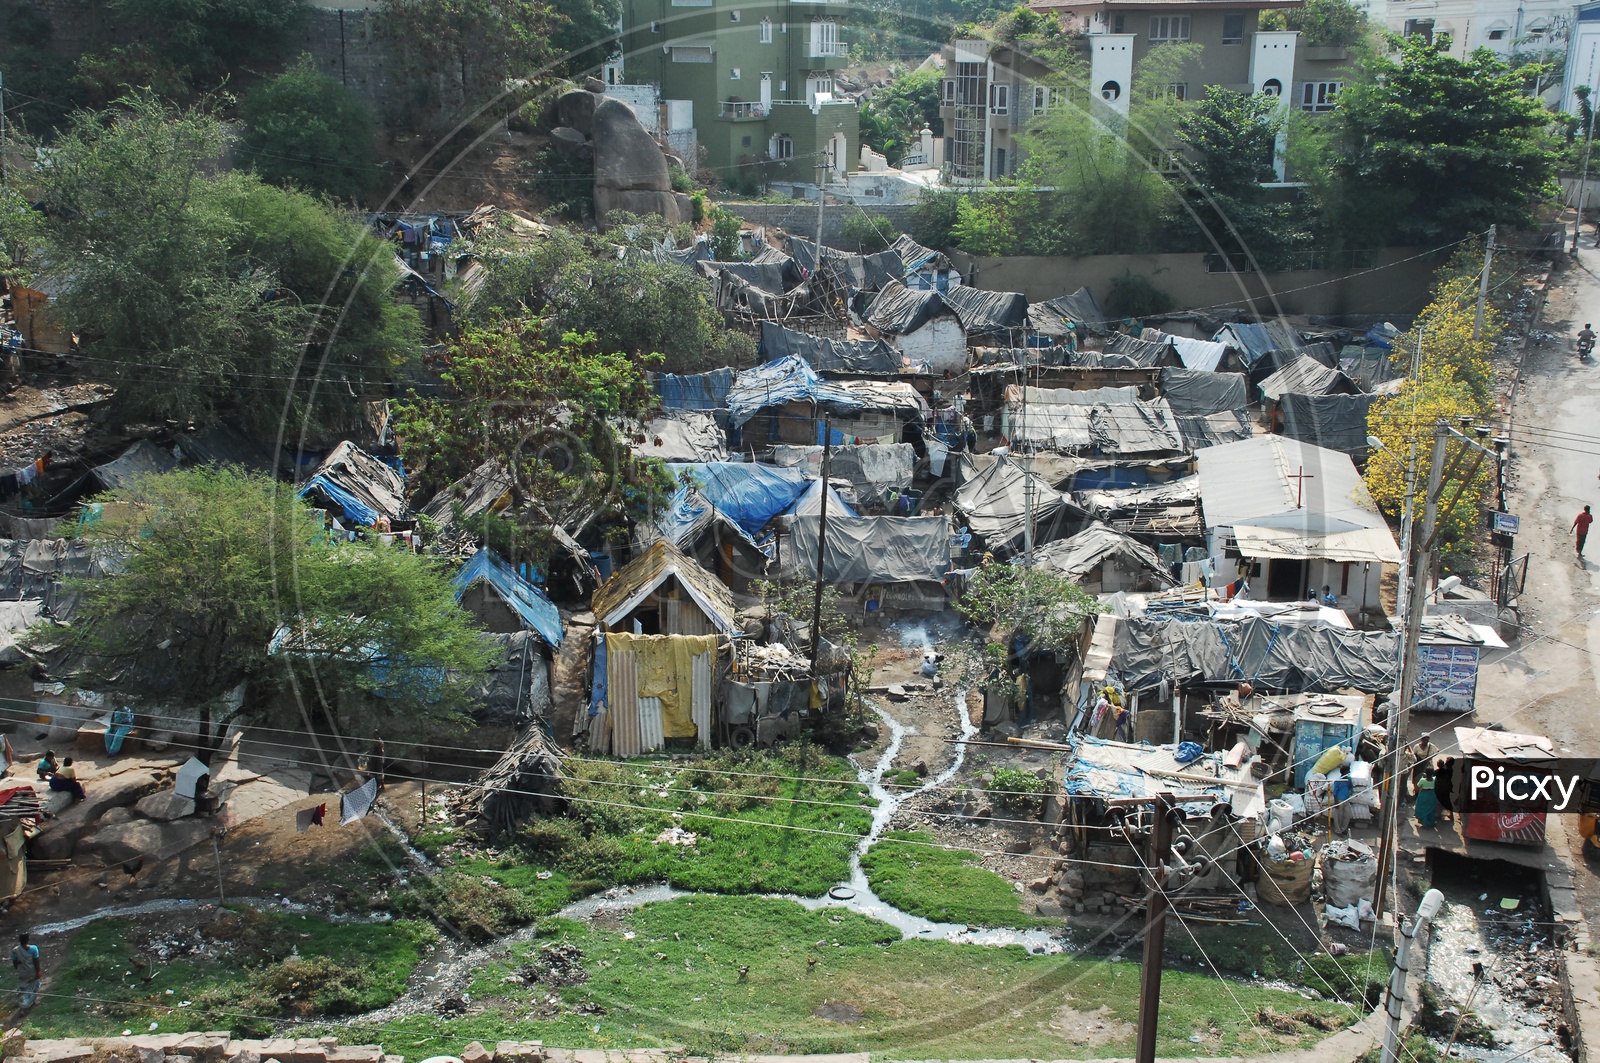 Huts in a Slum Area or Slum Area Huts